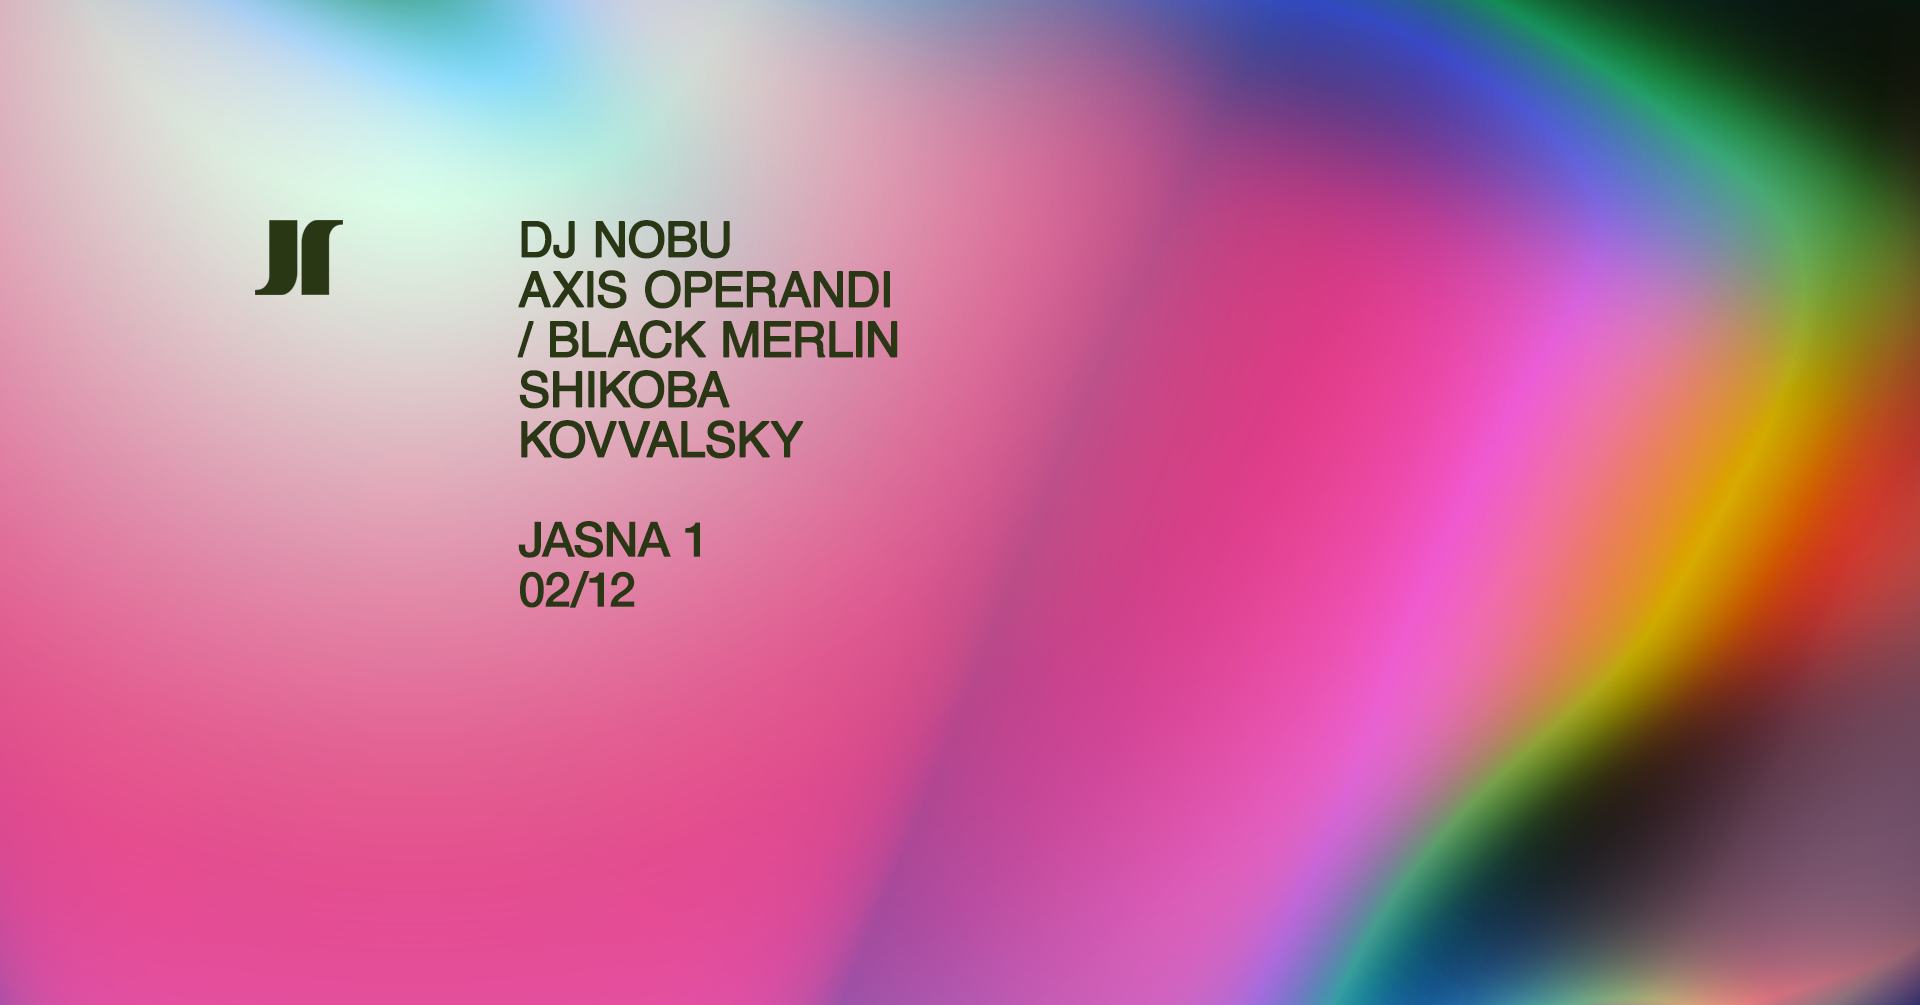 J1 - DJ Nobu, Axis Operandi / Black Merlin, SHIKOBA, Kovvalsky - フライヤー表